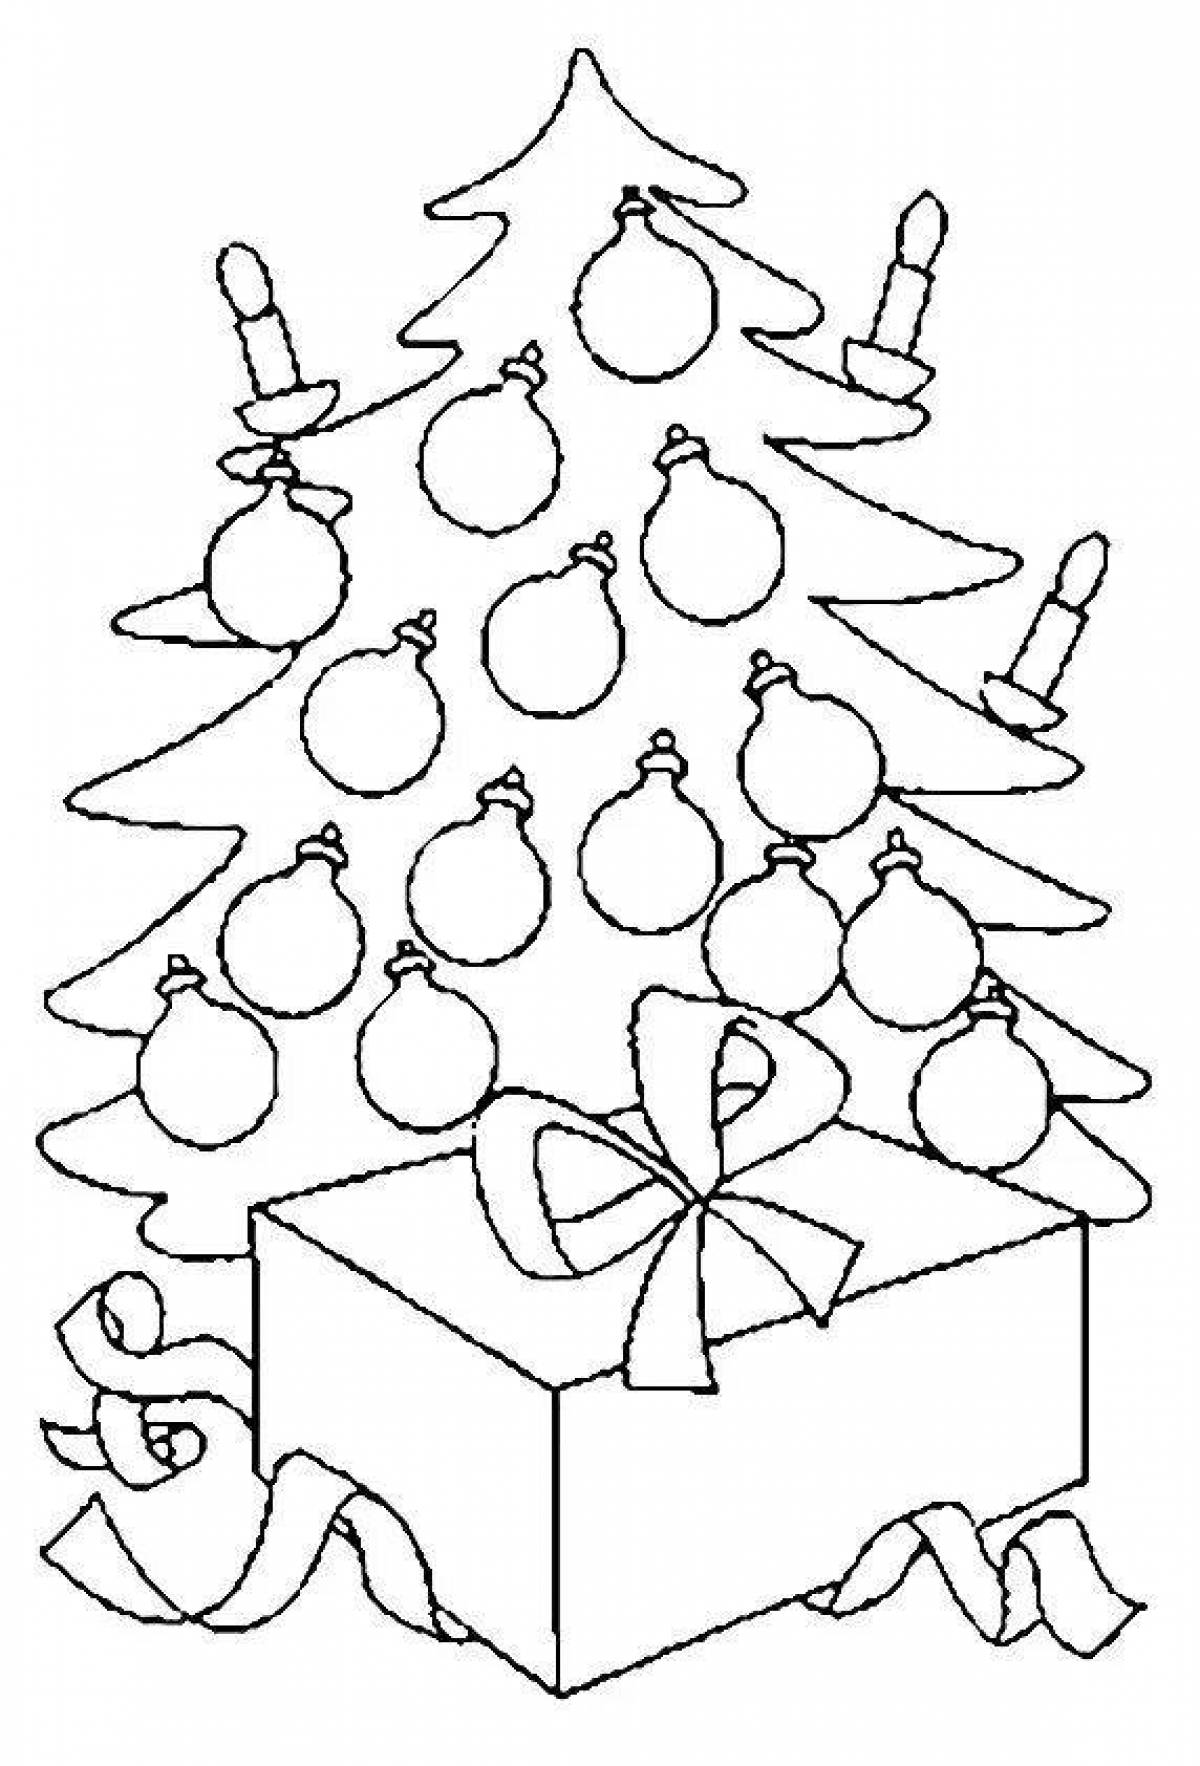 Shining Christmas tree with balls